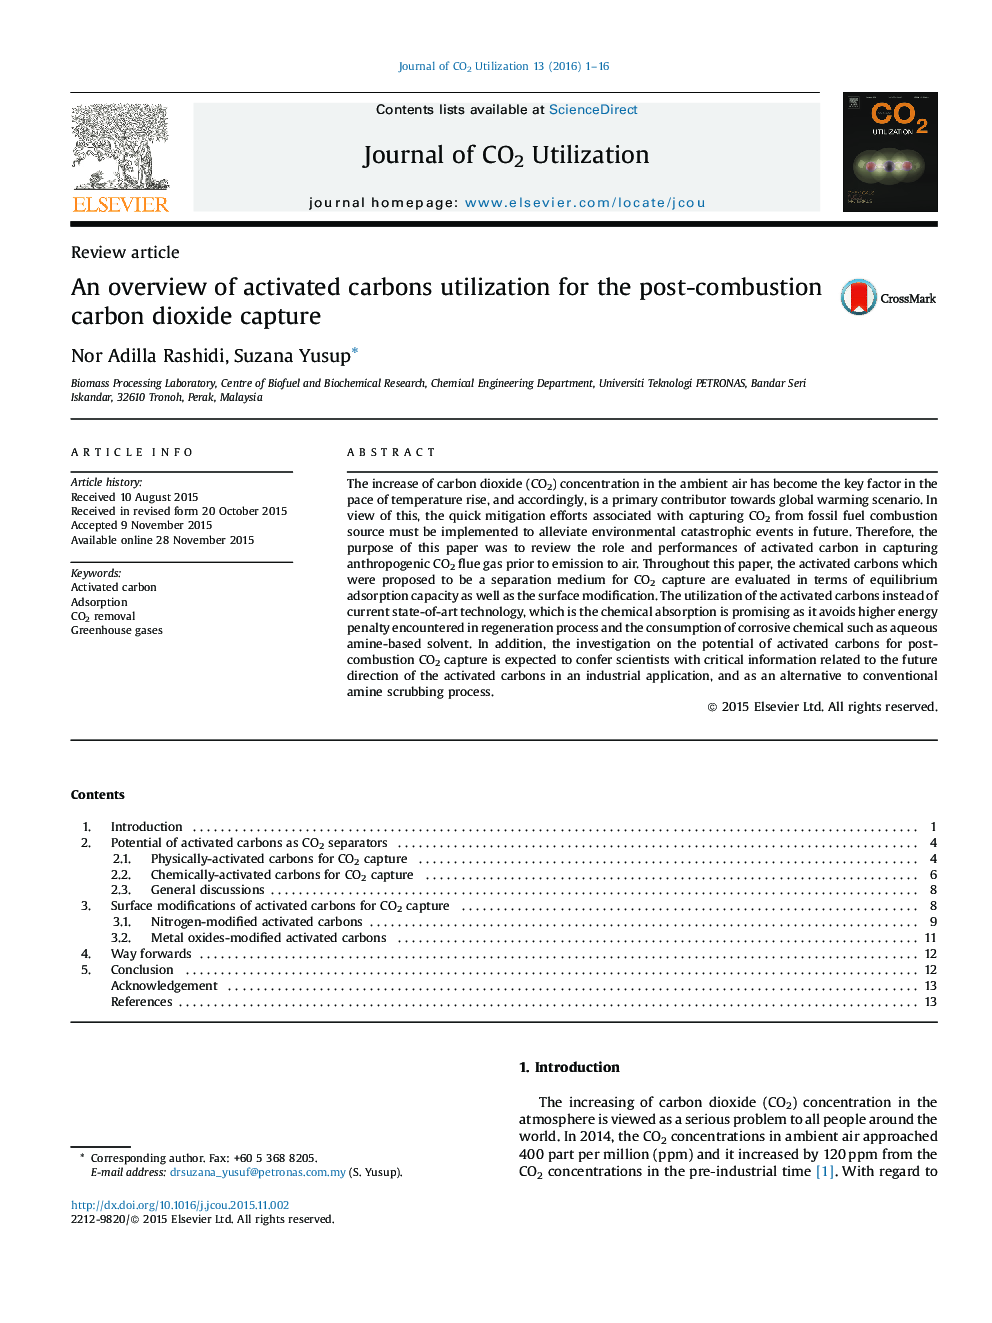 یک مرور کلی از استفاده از کربن فعال برای جذب دی اکسید کربن پس از احتراق